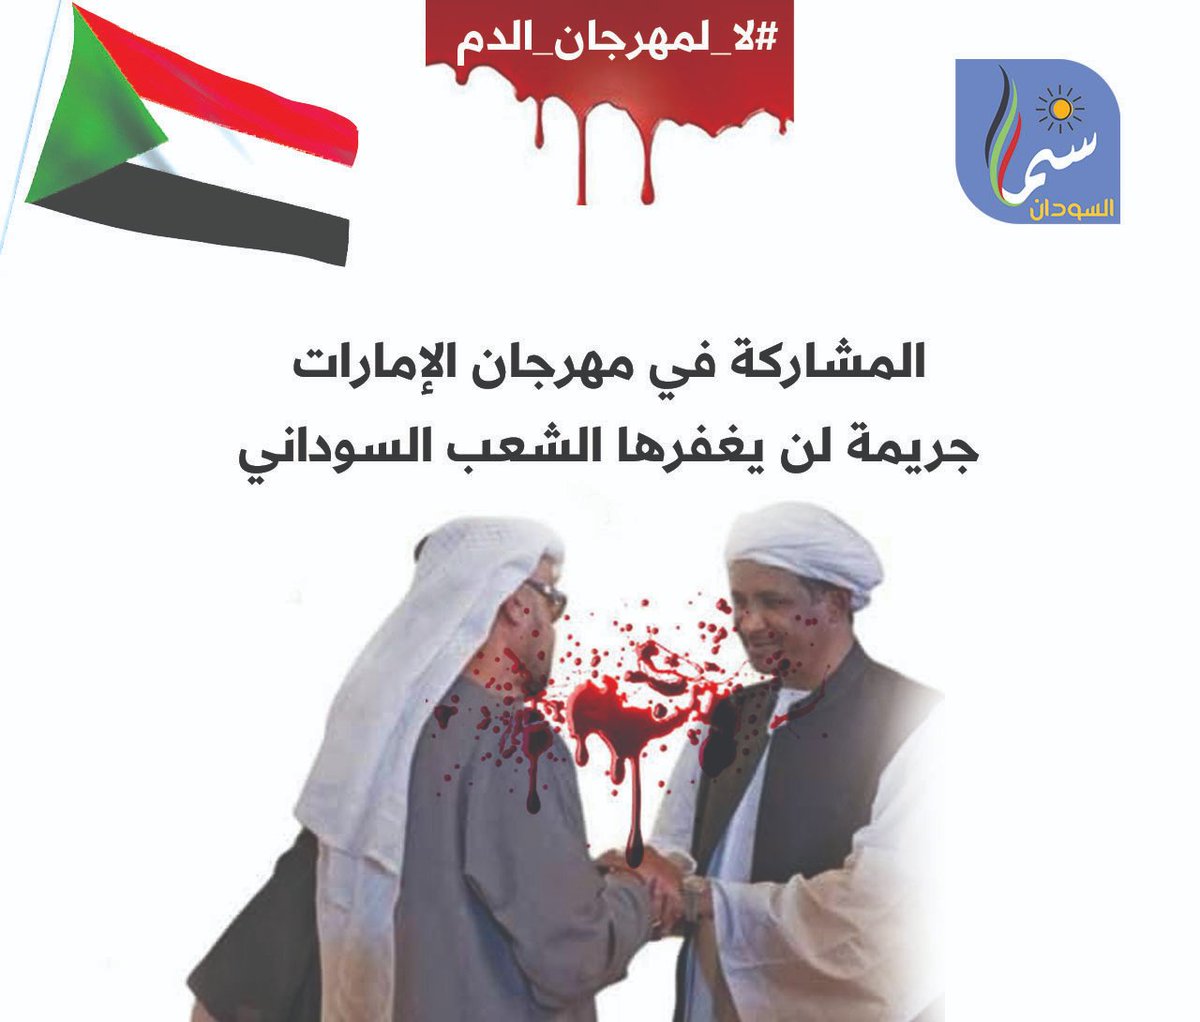 #لا_لمهرجان_الدم

المشاركة في مهرجان الإمارات
جريمة لن يغفرها الشعب السوداني